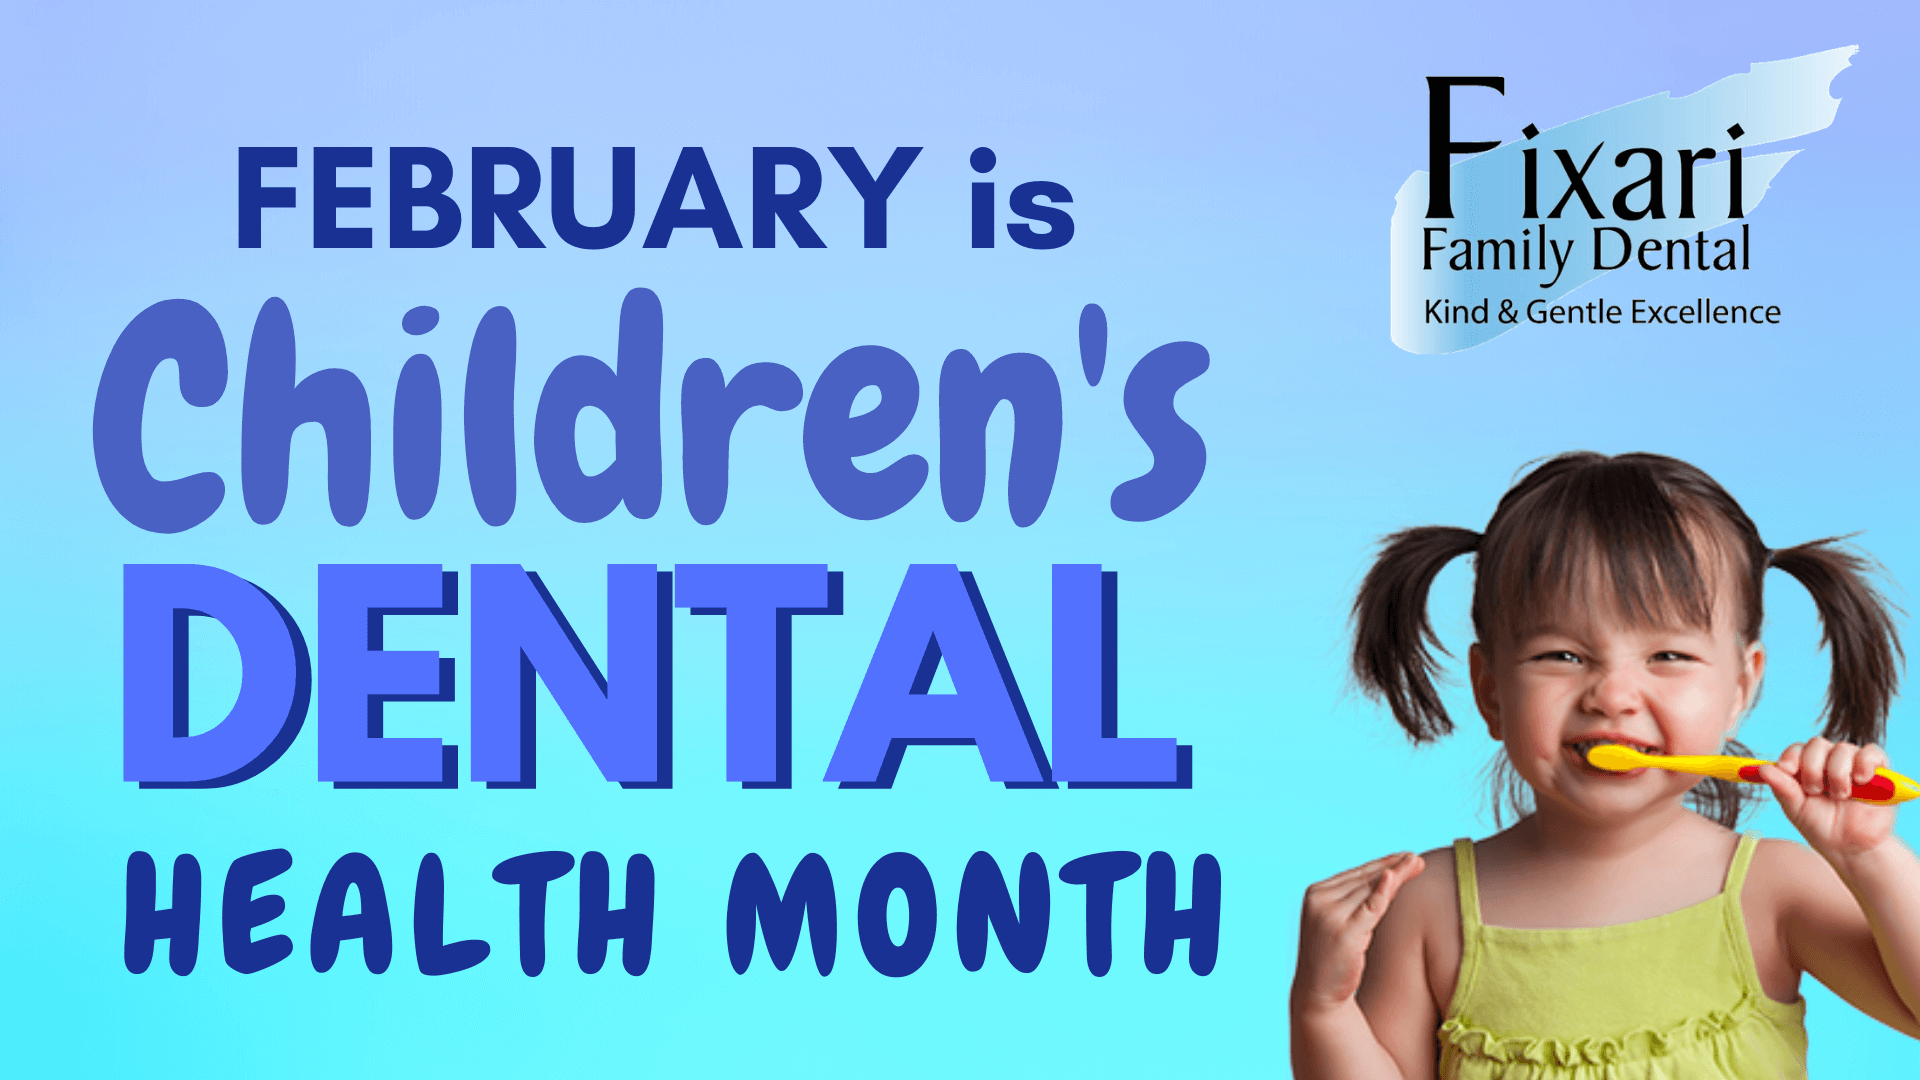 Fixari Family Dental Children's Dental Health Month Banner